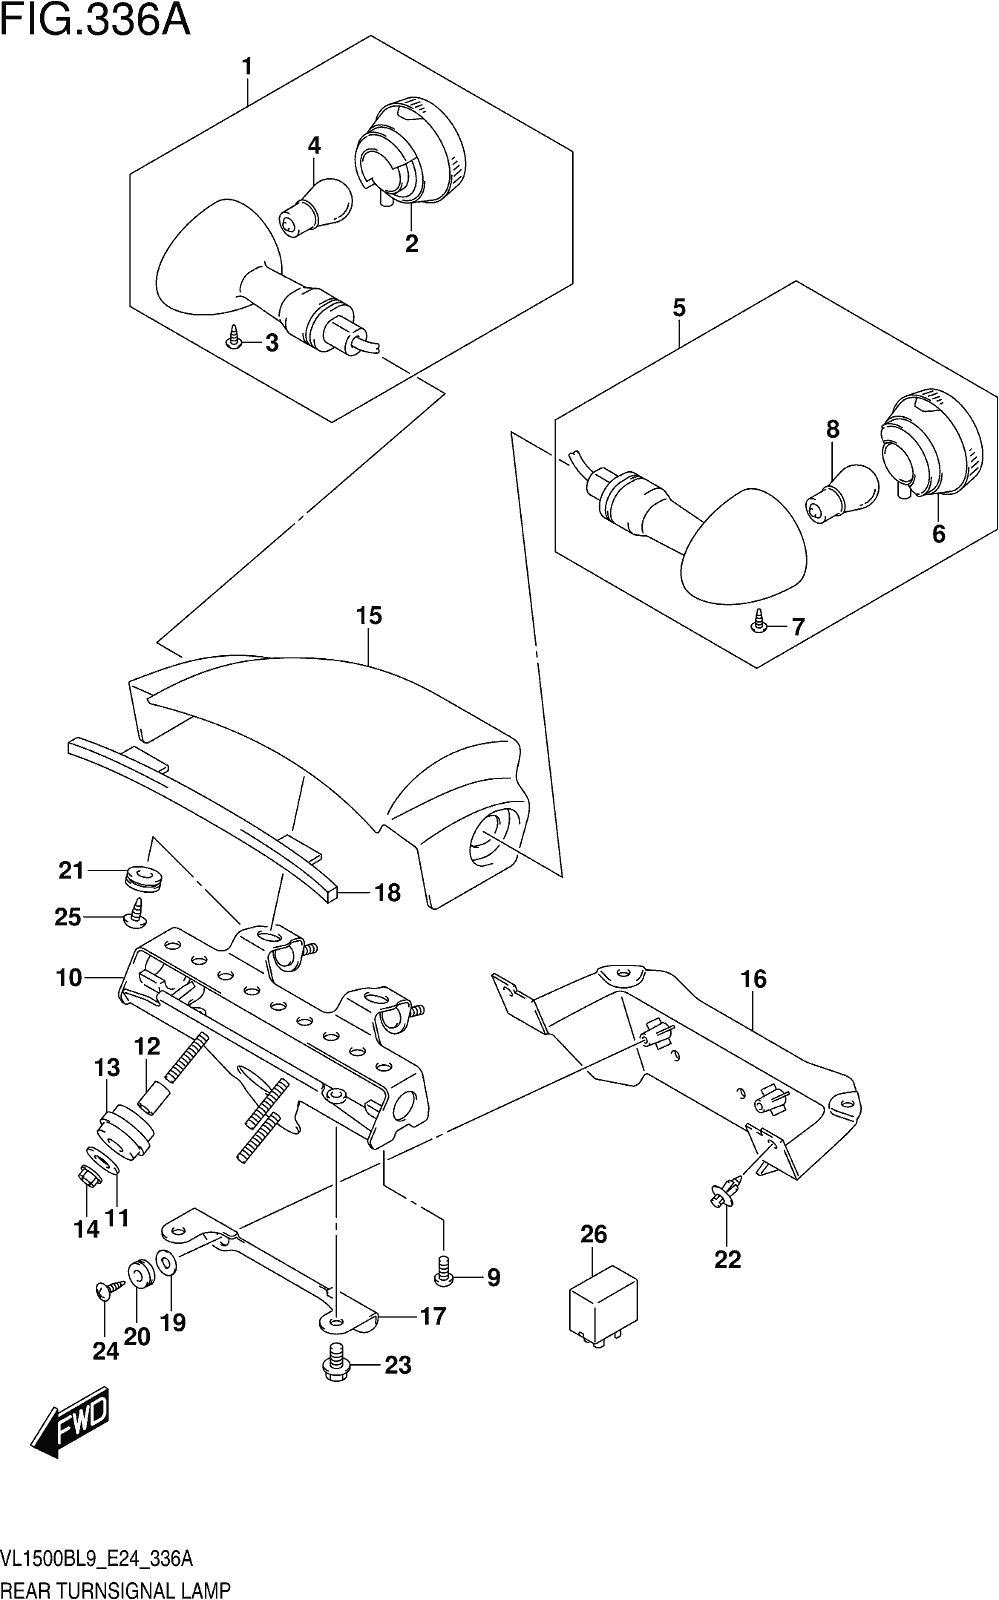 Alle Teile für das Fig. 336a Rear Turnsignal Lamp des Suzuki VL 1500B 2019